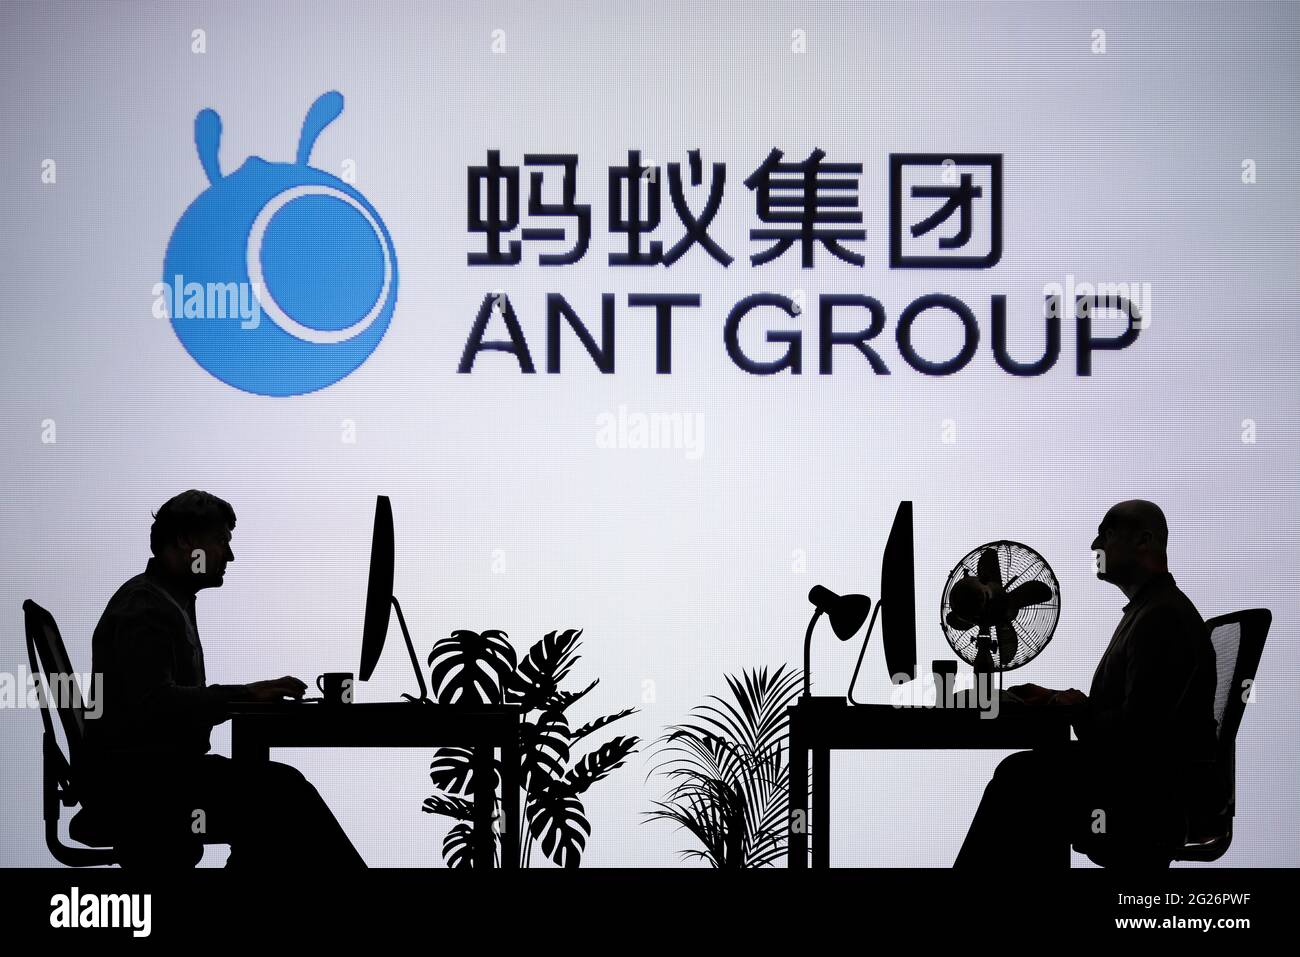 El logotipo de Ant Group se ve en una pantalla LED de fondo, mientras que dos personas con siluetas trabajan en un entorno de oficina (sólo para uso editorial) Foto de stock